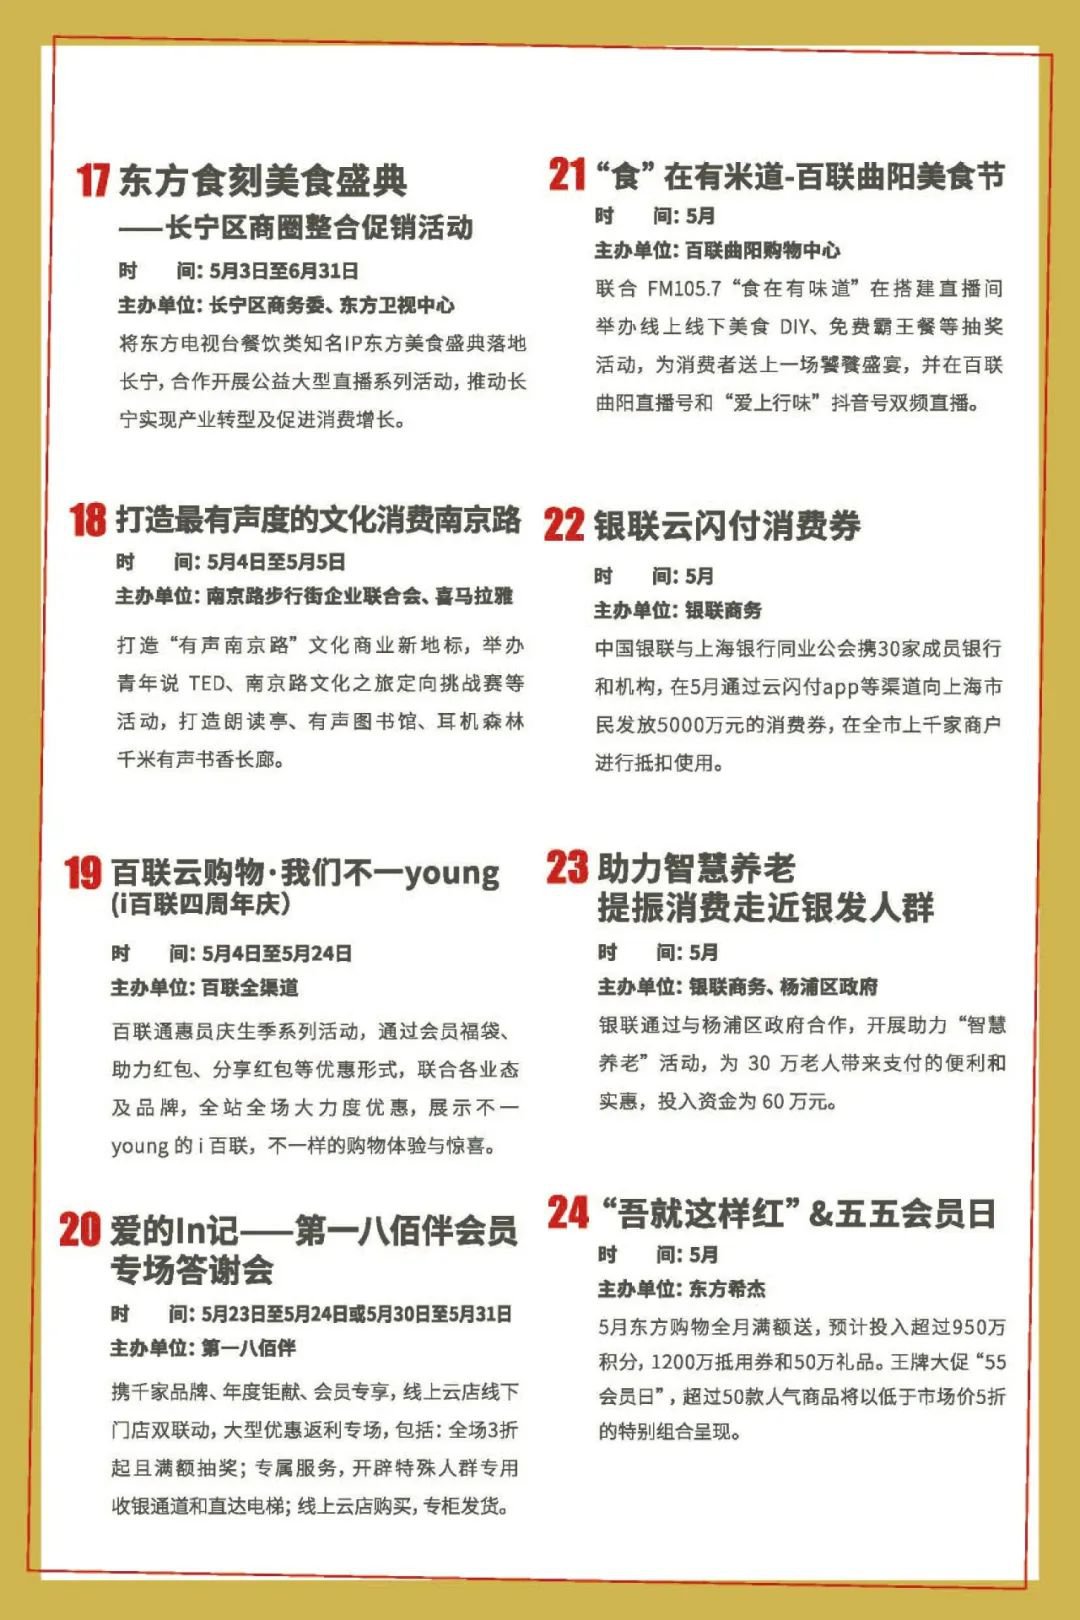 上海五五购物节活动内容安排一览